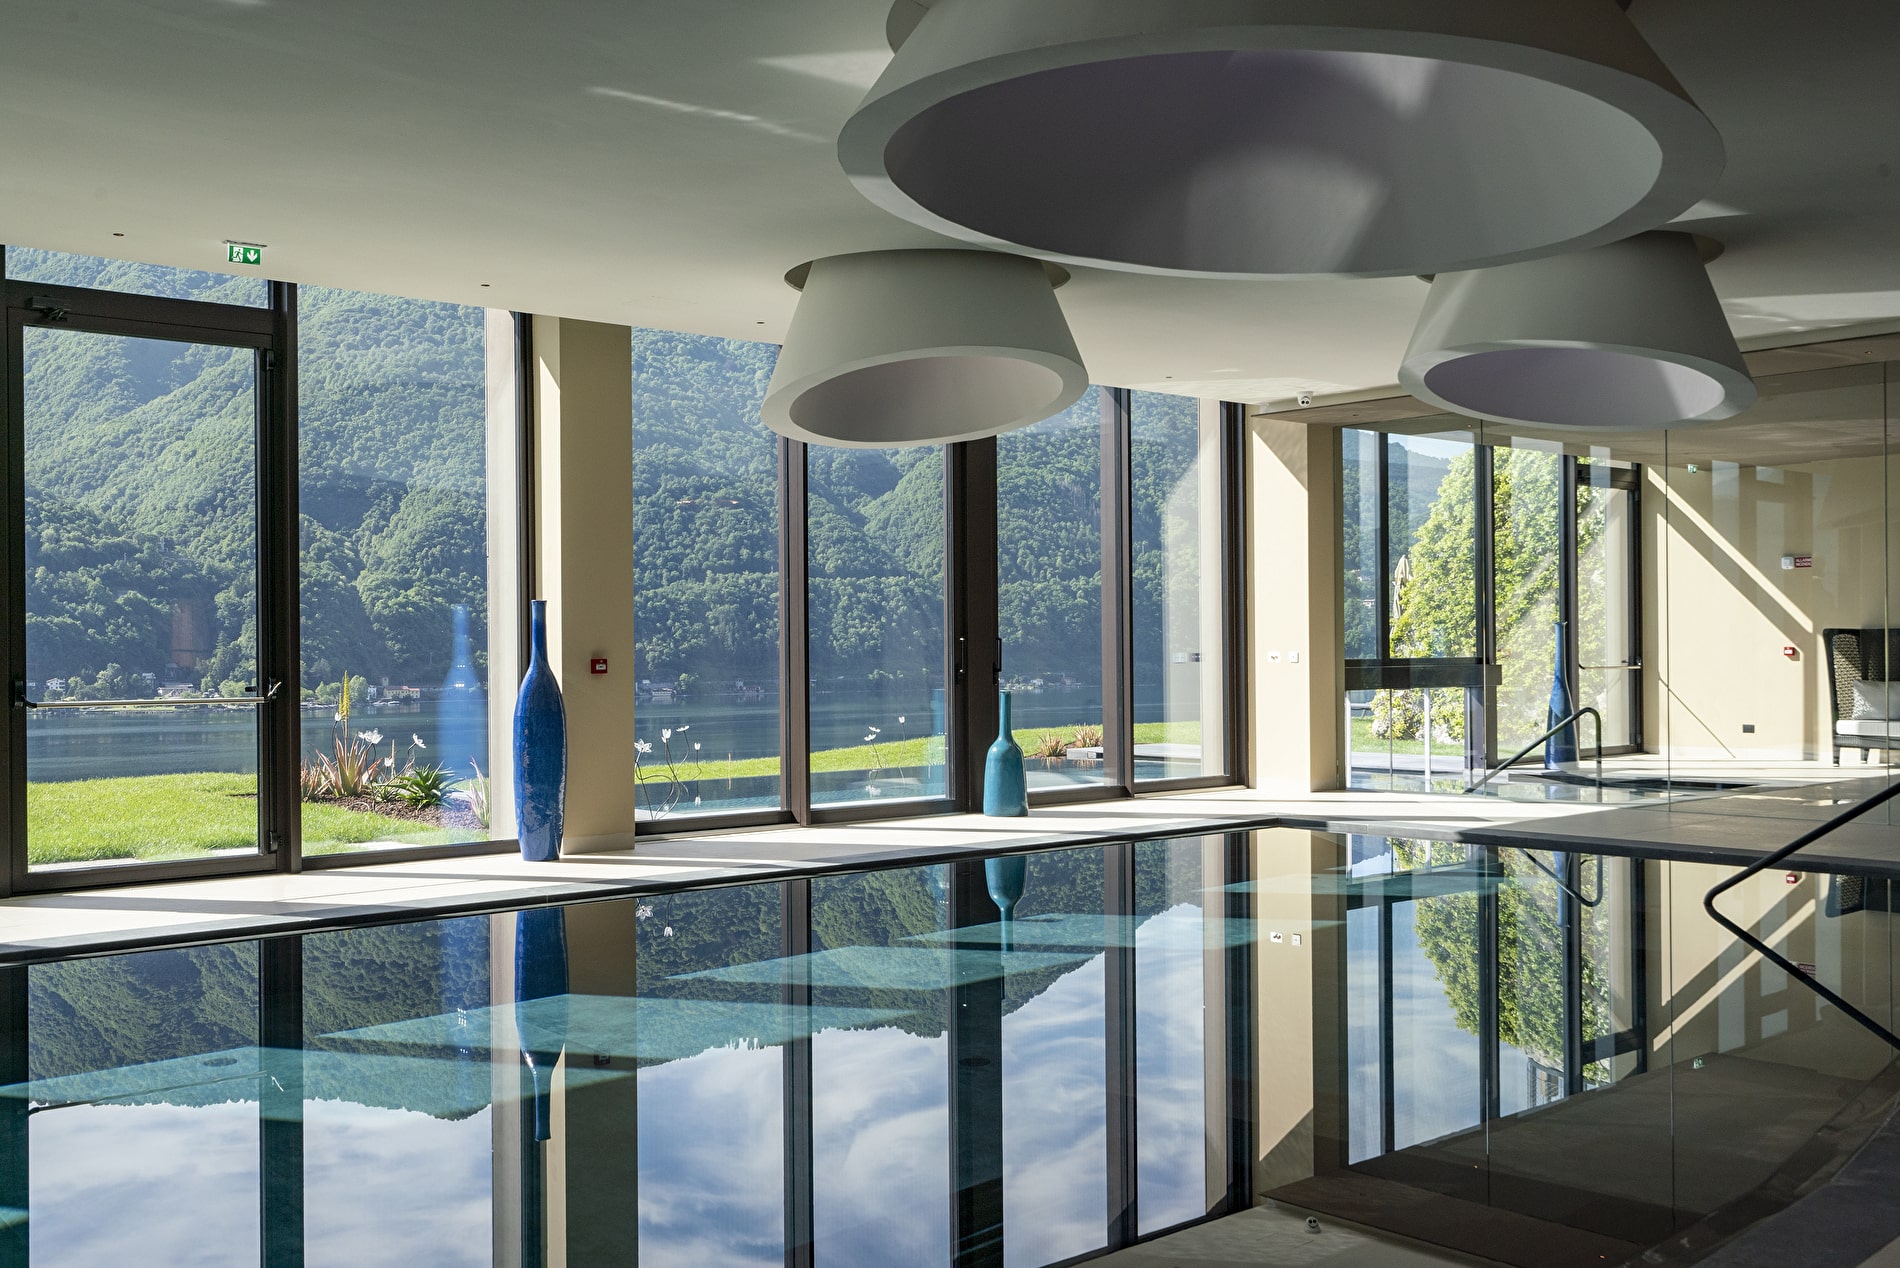 ARIA Retreat & SPA: il fascino magico dei laghi di Como e Lugano